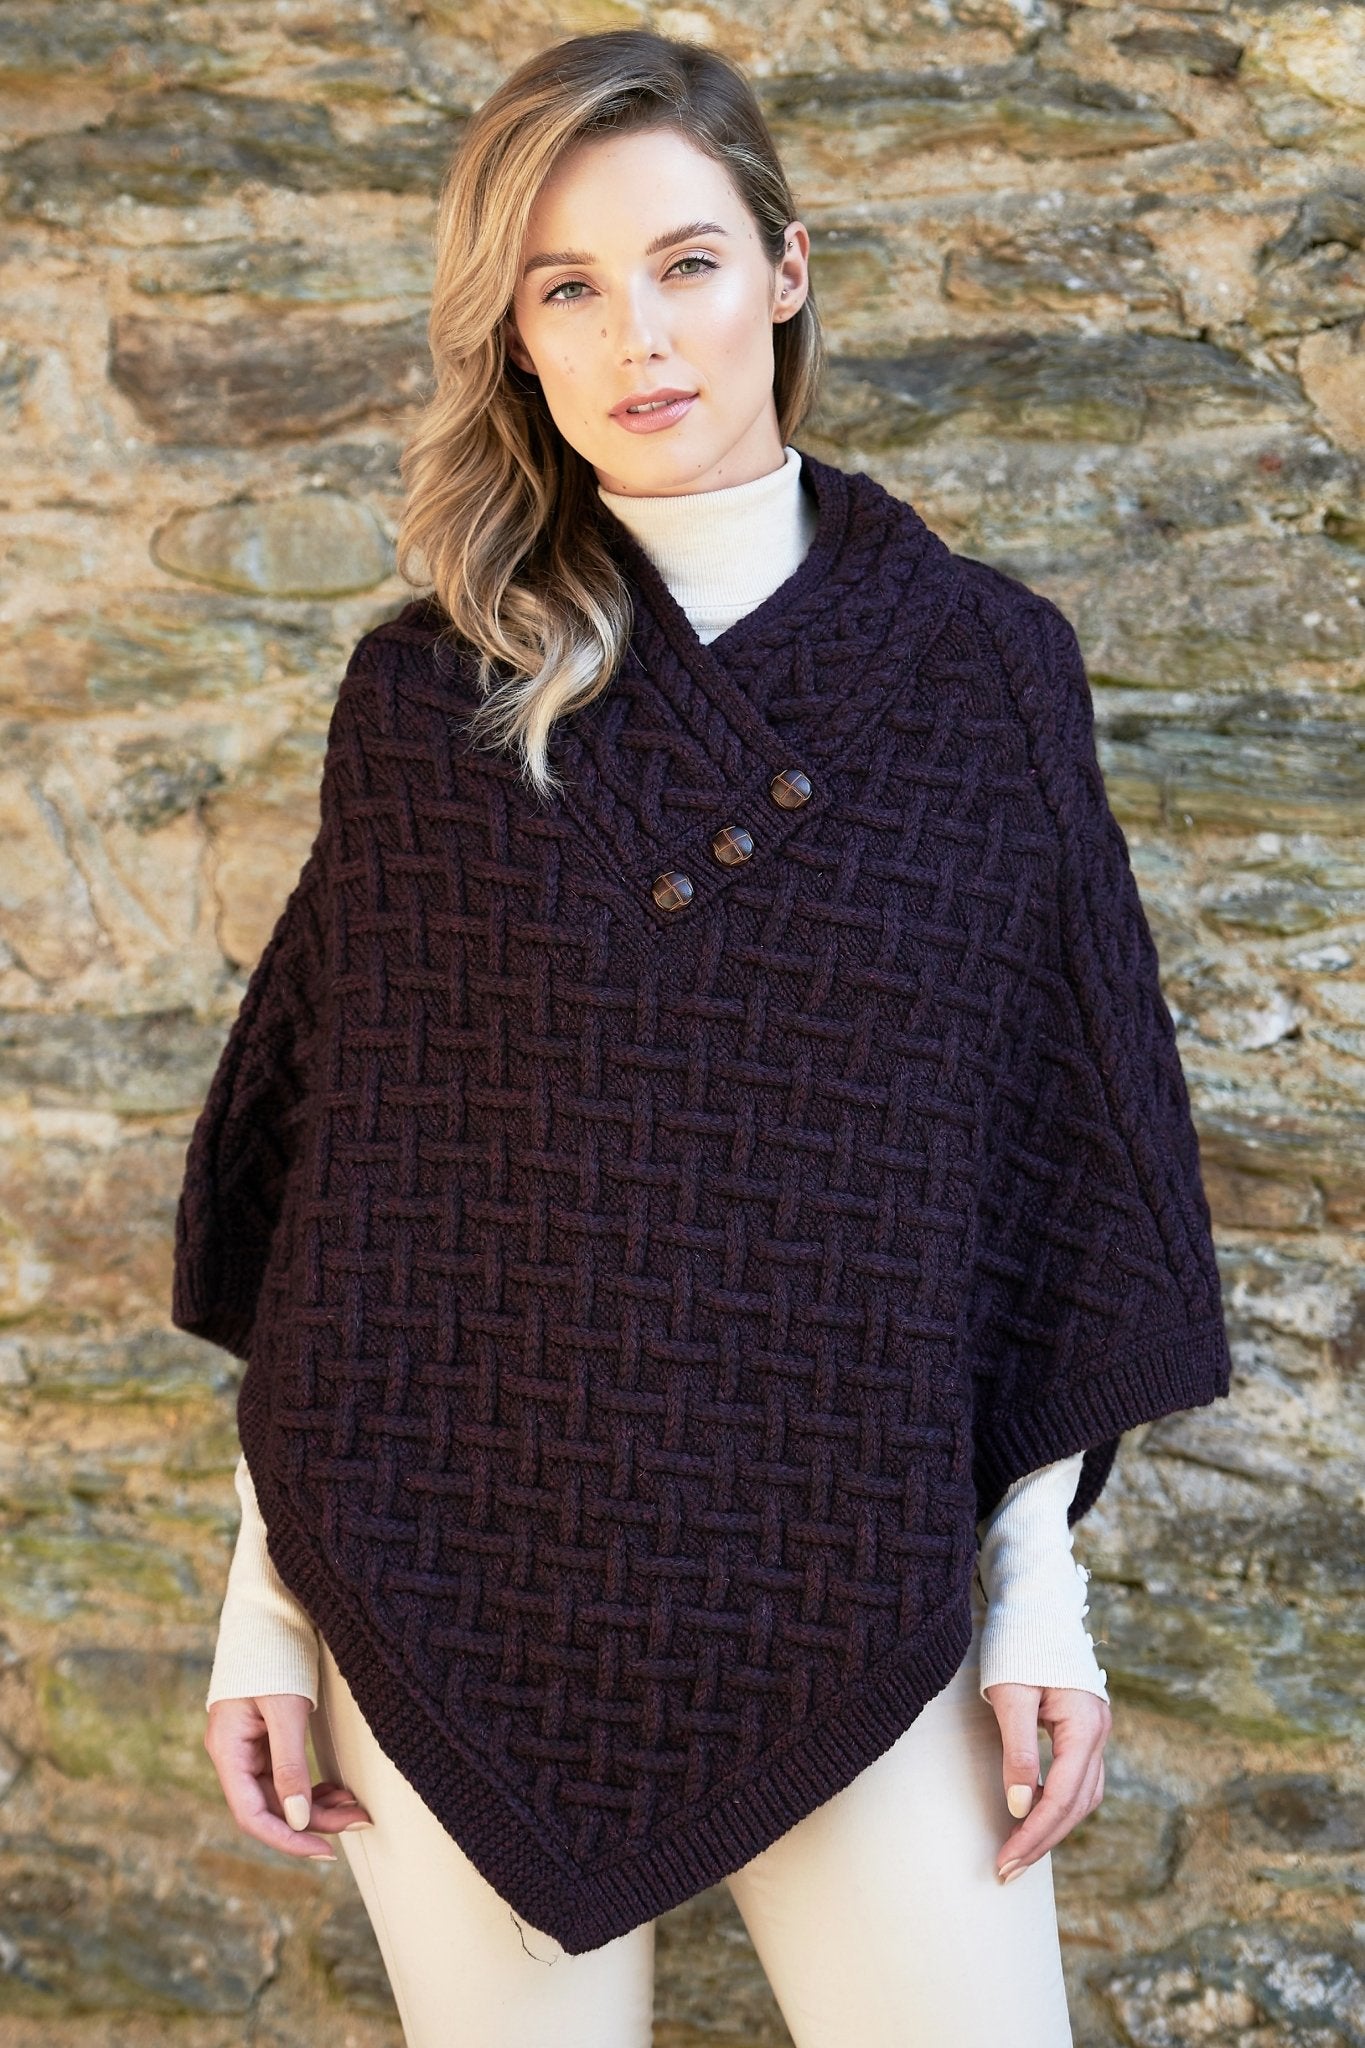 Irish Connemara Supersoft Merino Wool Poncho - L'Atelier Global